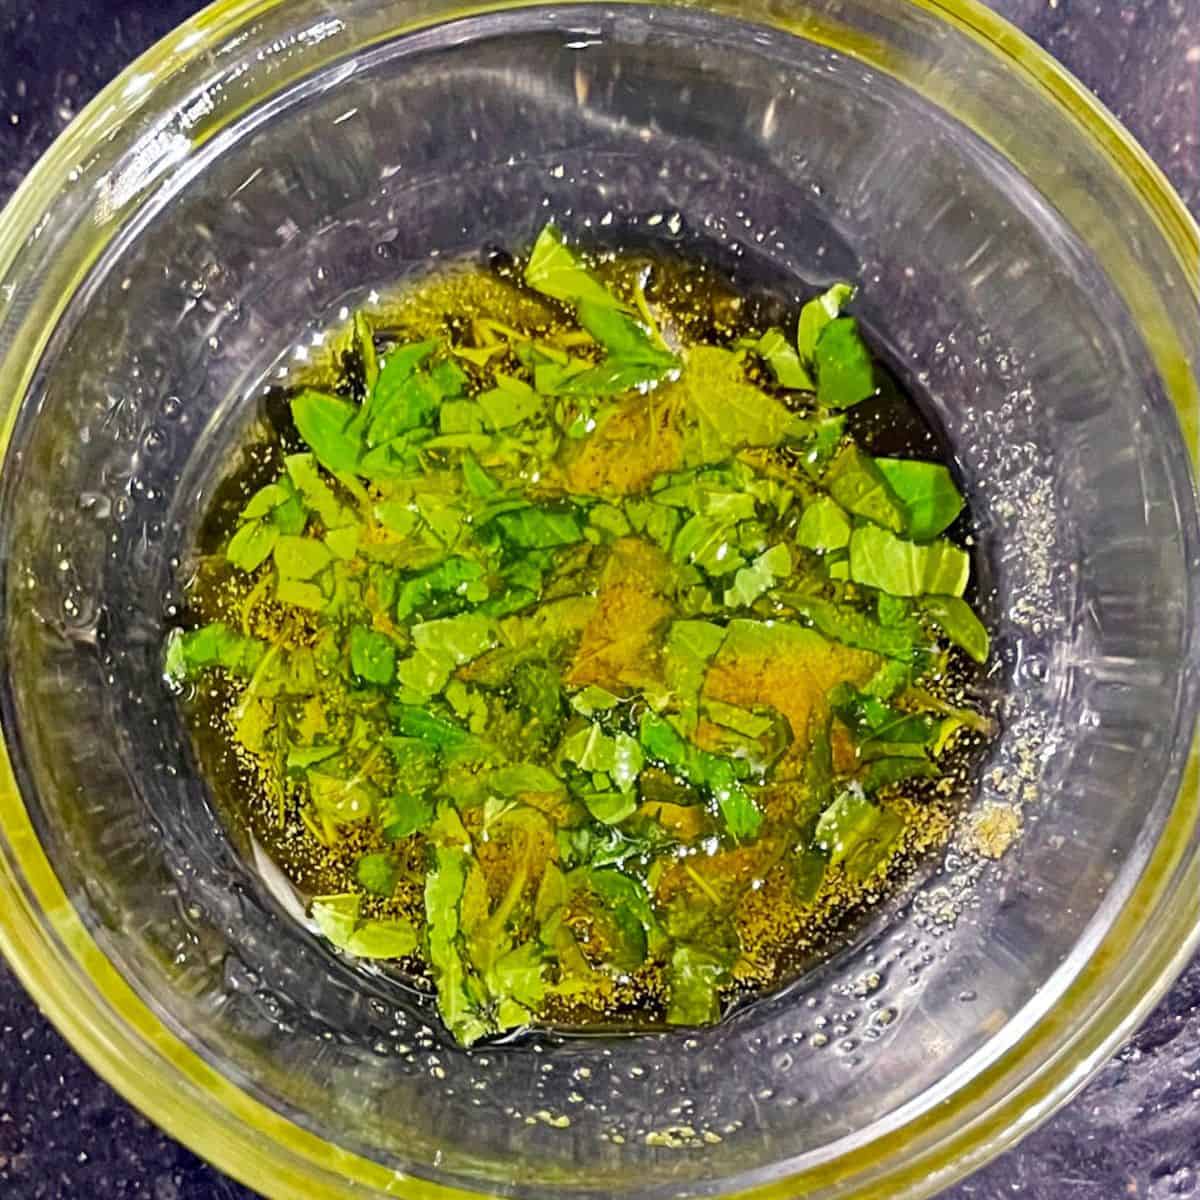 سبزی و سیر در روغن زیتون در یک کاسه.